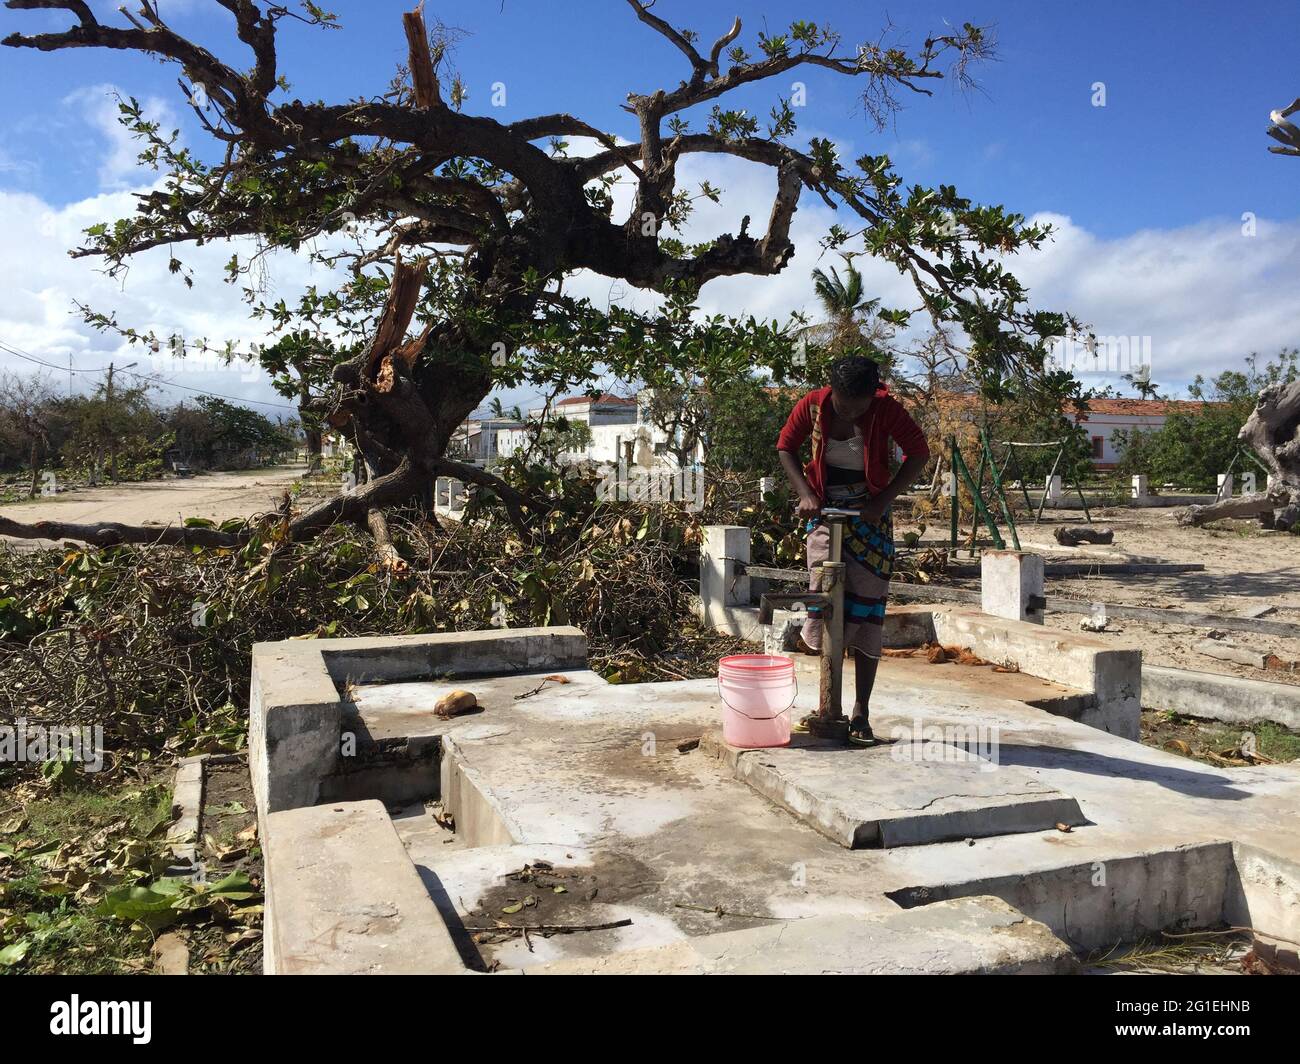 Casas dañadas y carreteras en la ciudad africana después del huracán Kenneth Foto de stock